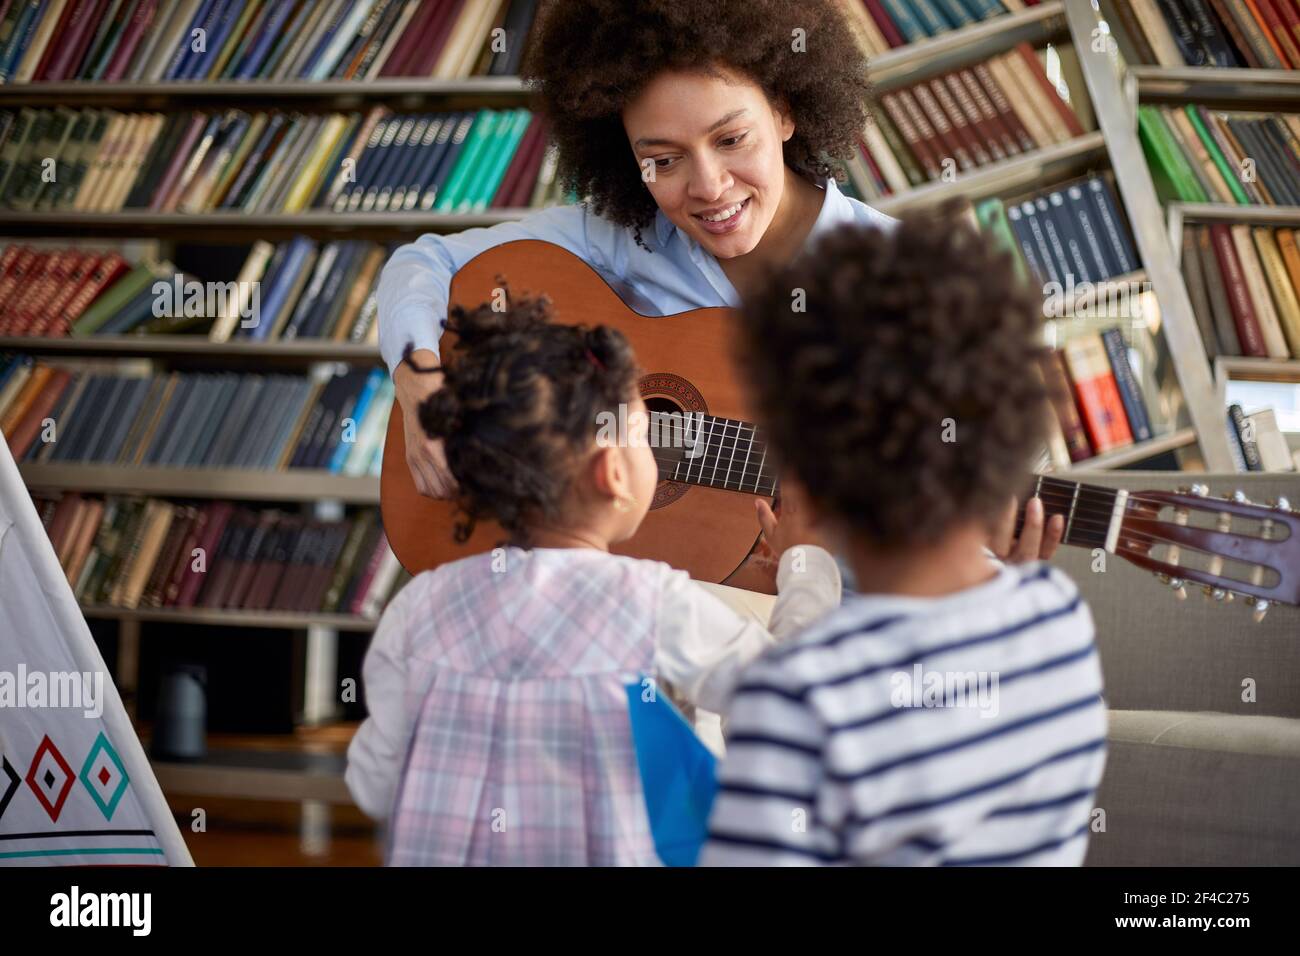 Les petits enfants sont curieux de la guitare que leur mère joue pour eux dans une atmosphère détendue à la maison. Famille, maison, temps de jeu Banque D'Images